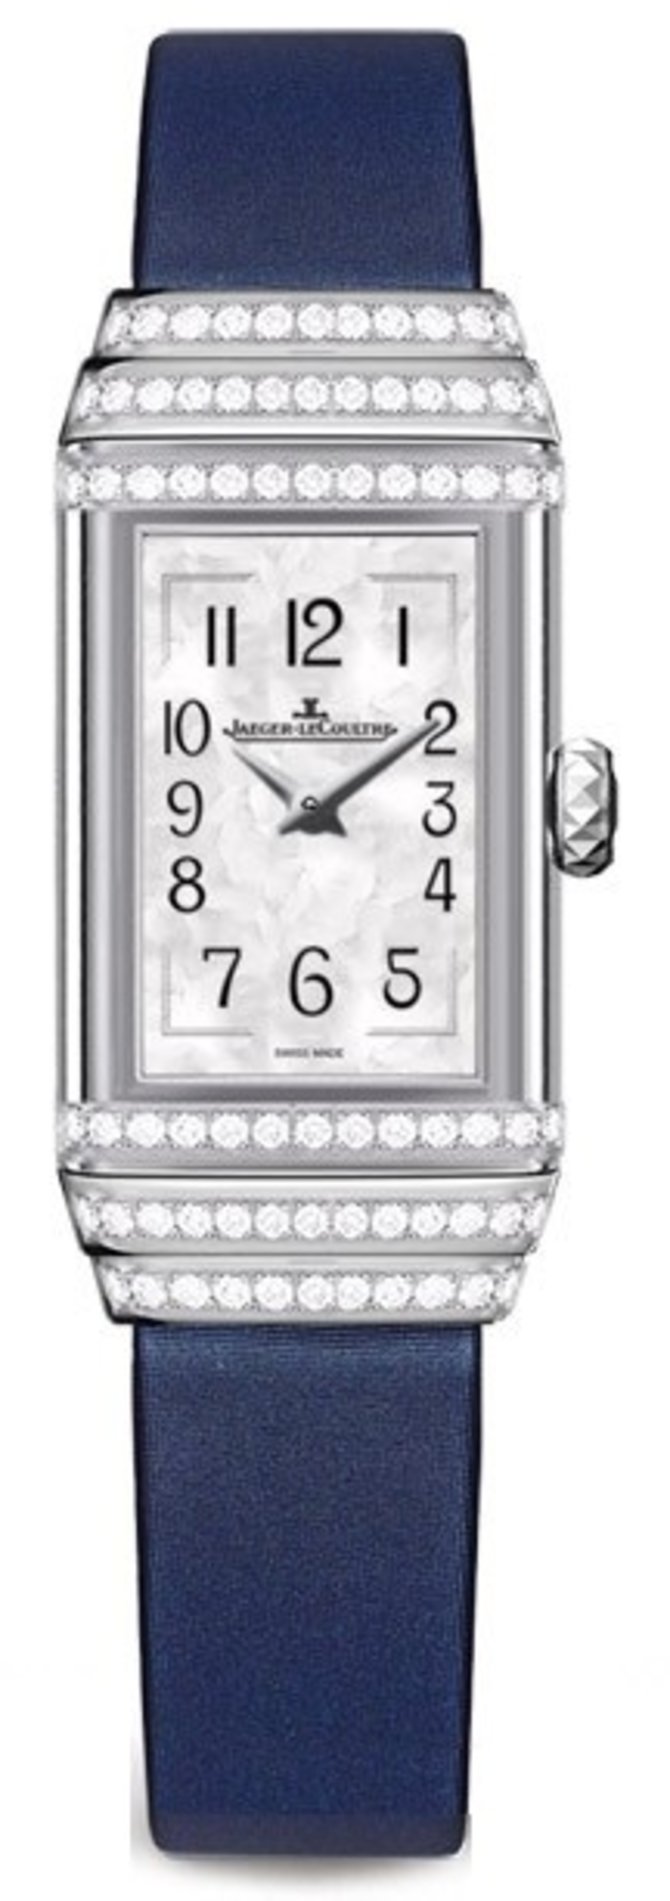 Мужские часы Classique One Duetto Jewelry (3363401) - купить в России ...